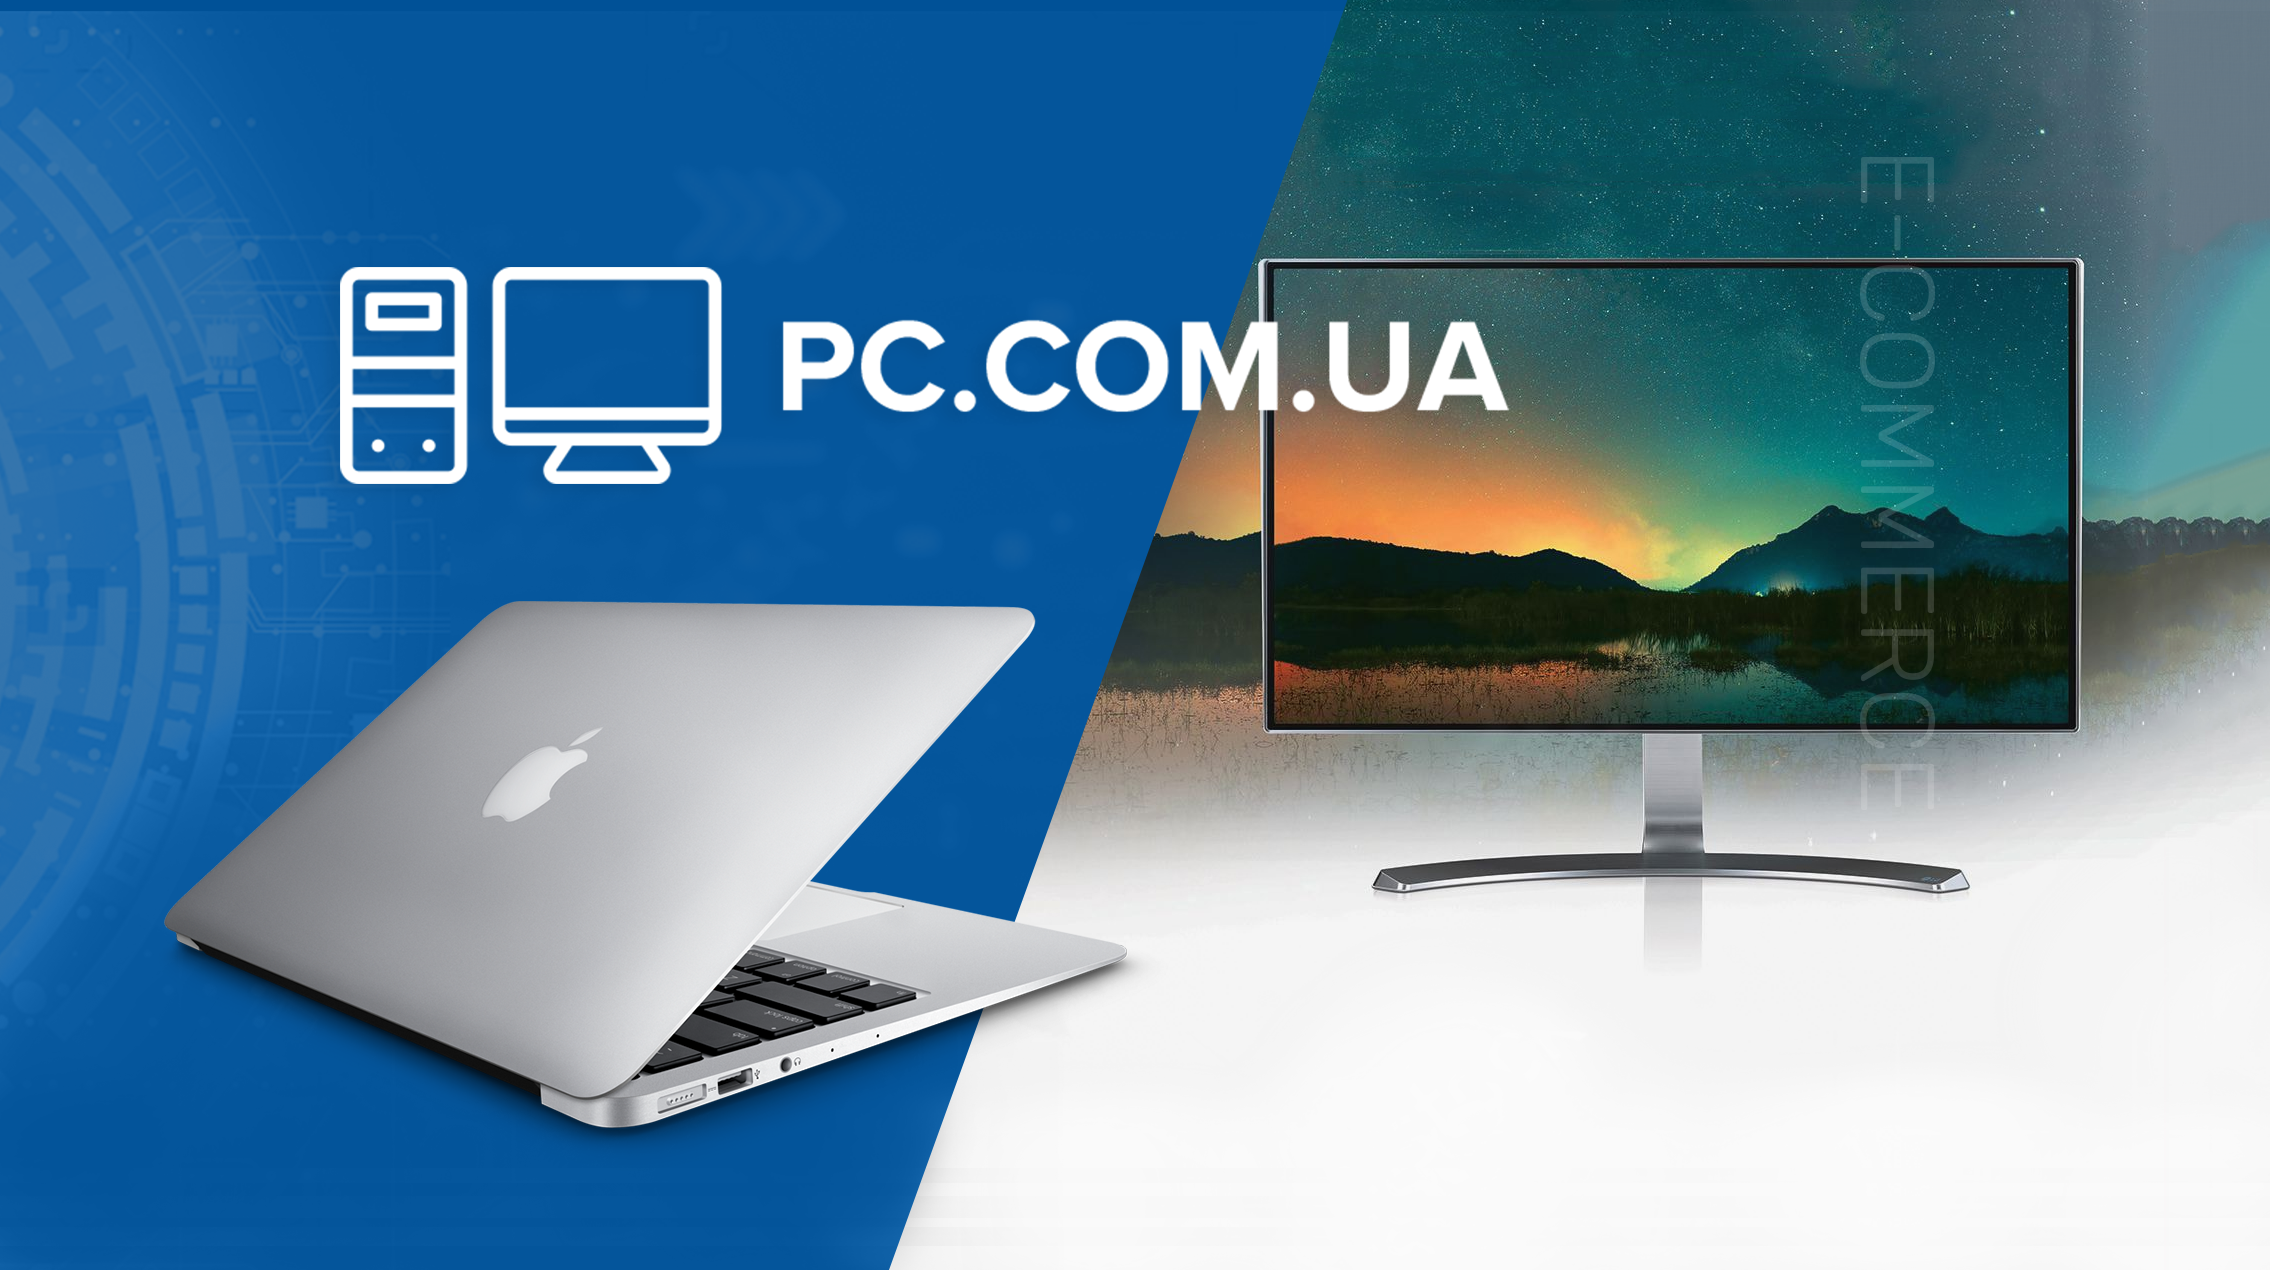 Створення інтернет-магазину комп'ютерної техніки PC.com.ua